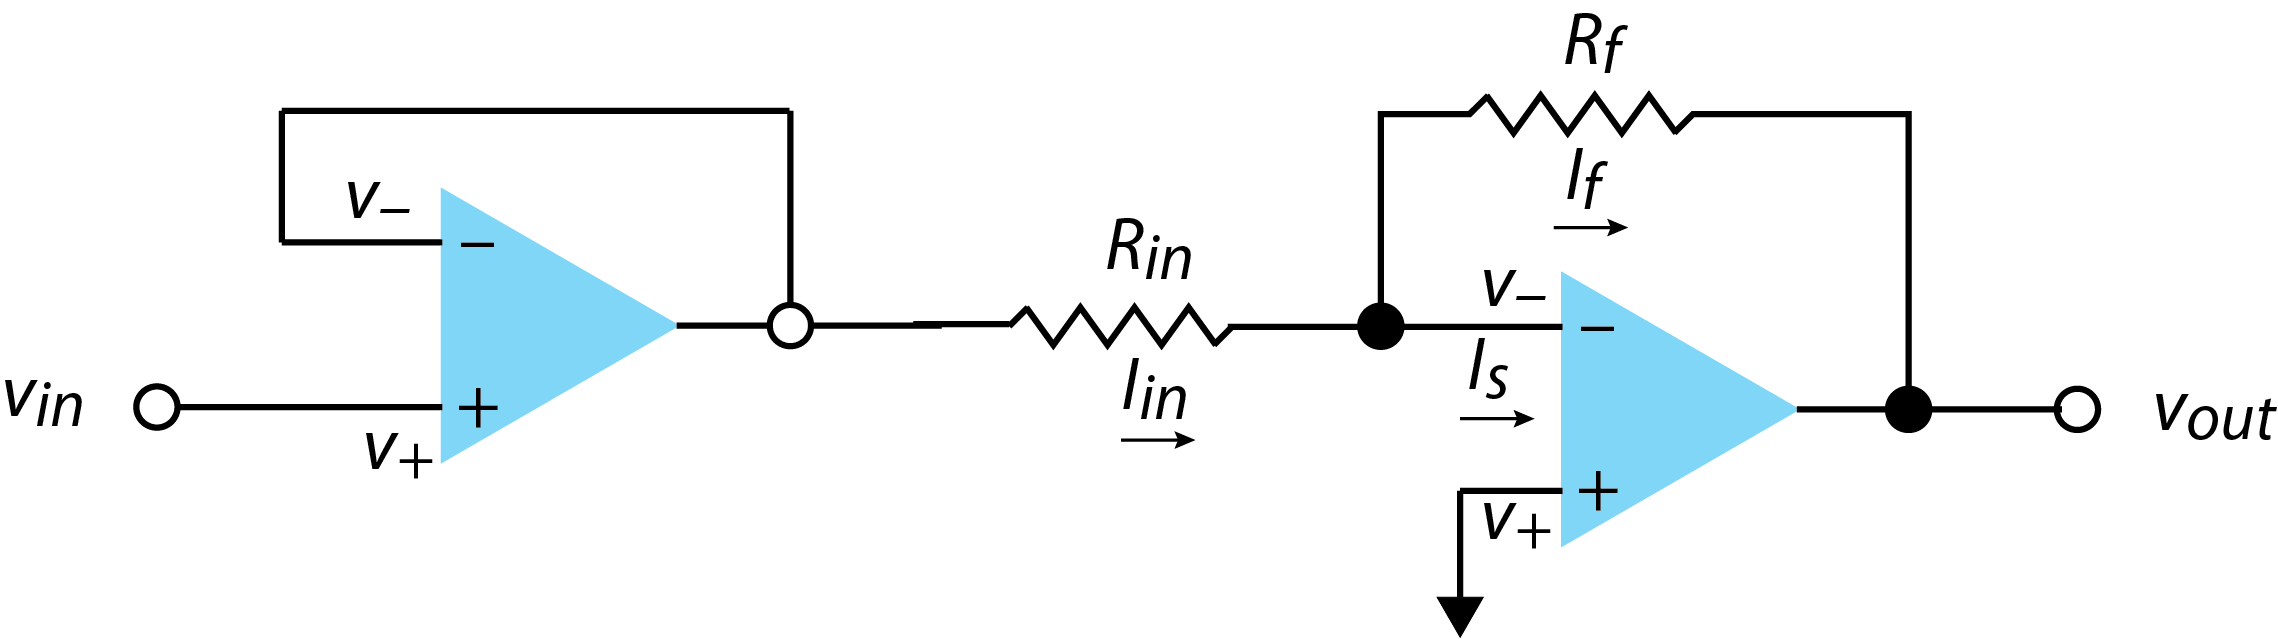 Circuito para medir voltageusing un seguidor de voltaje y un amplificador inversor.